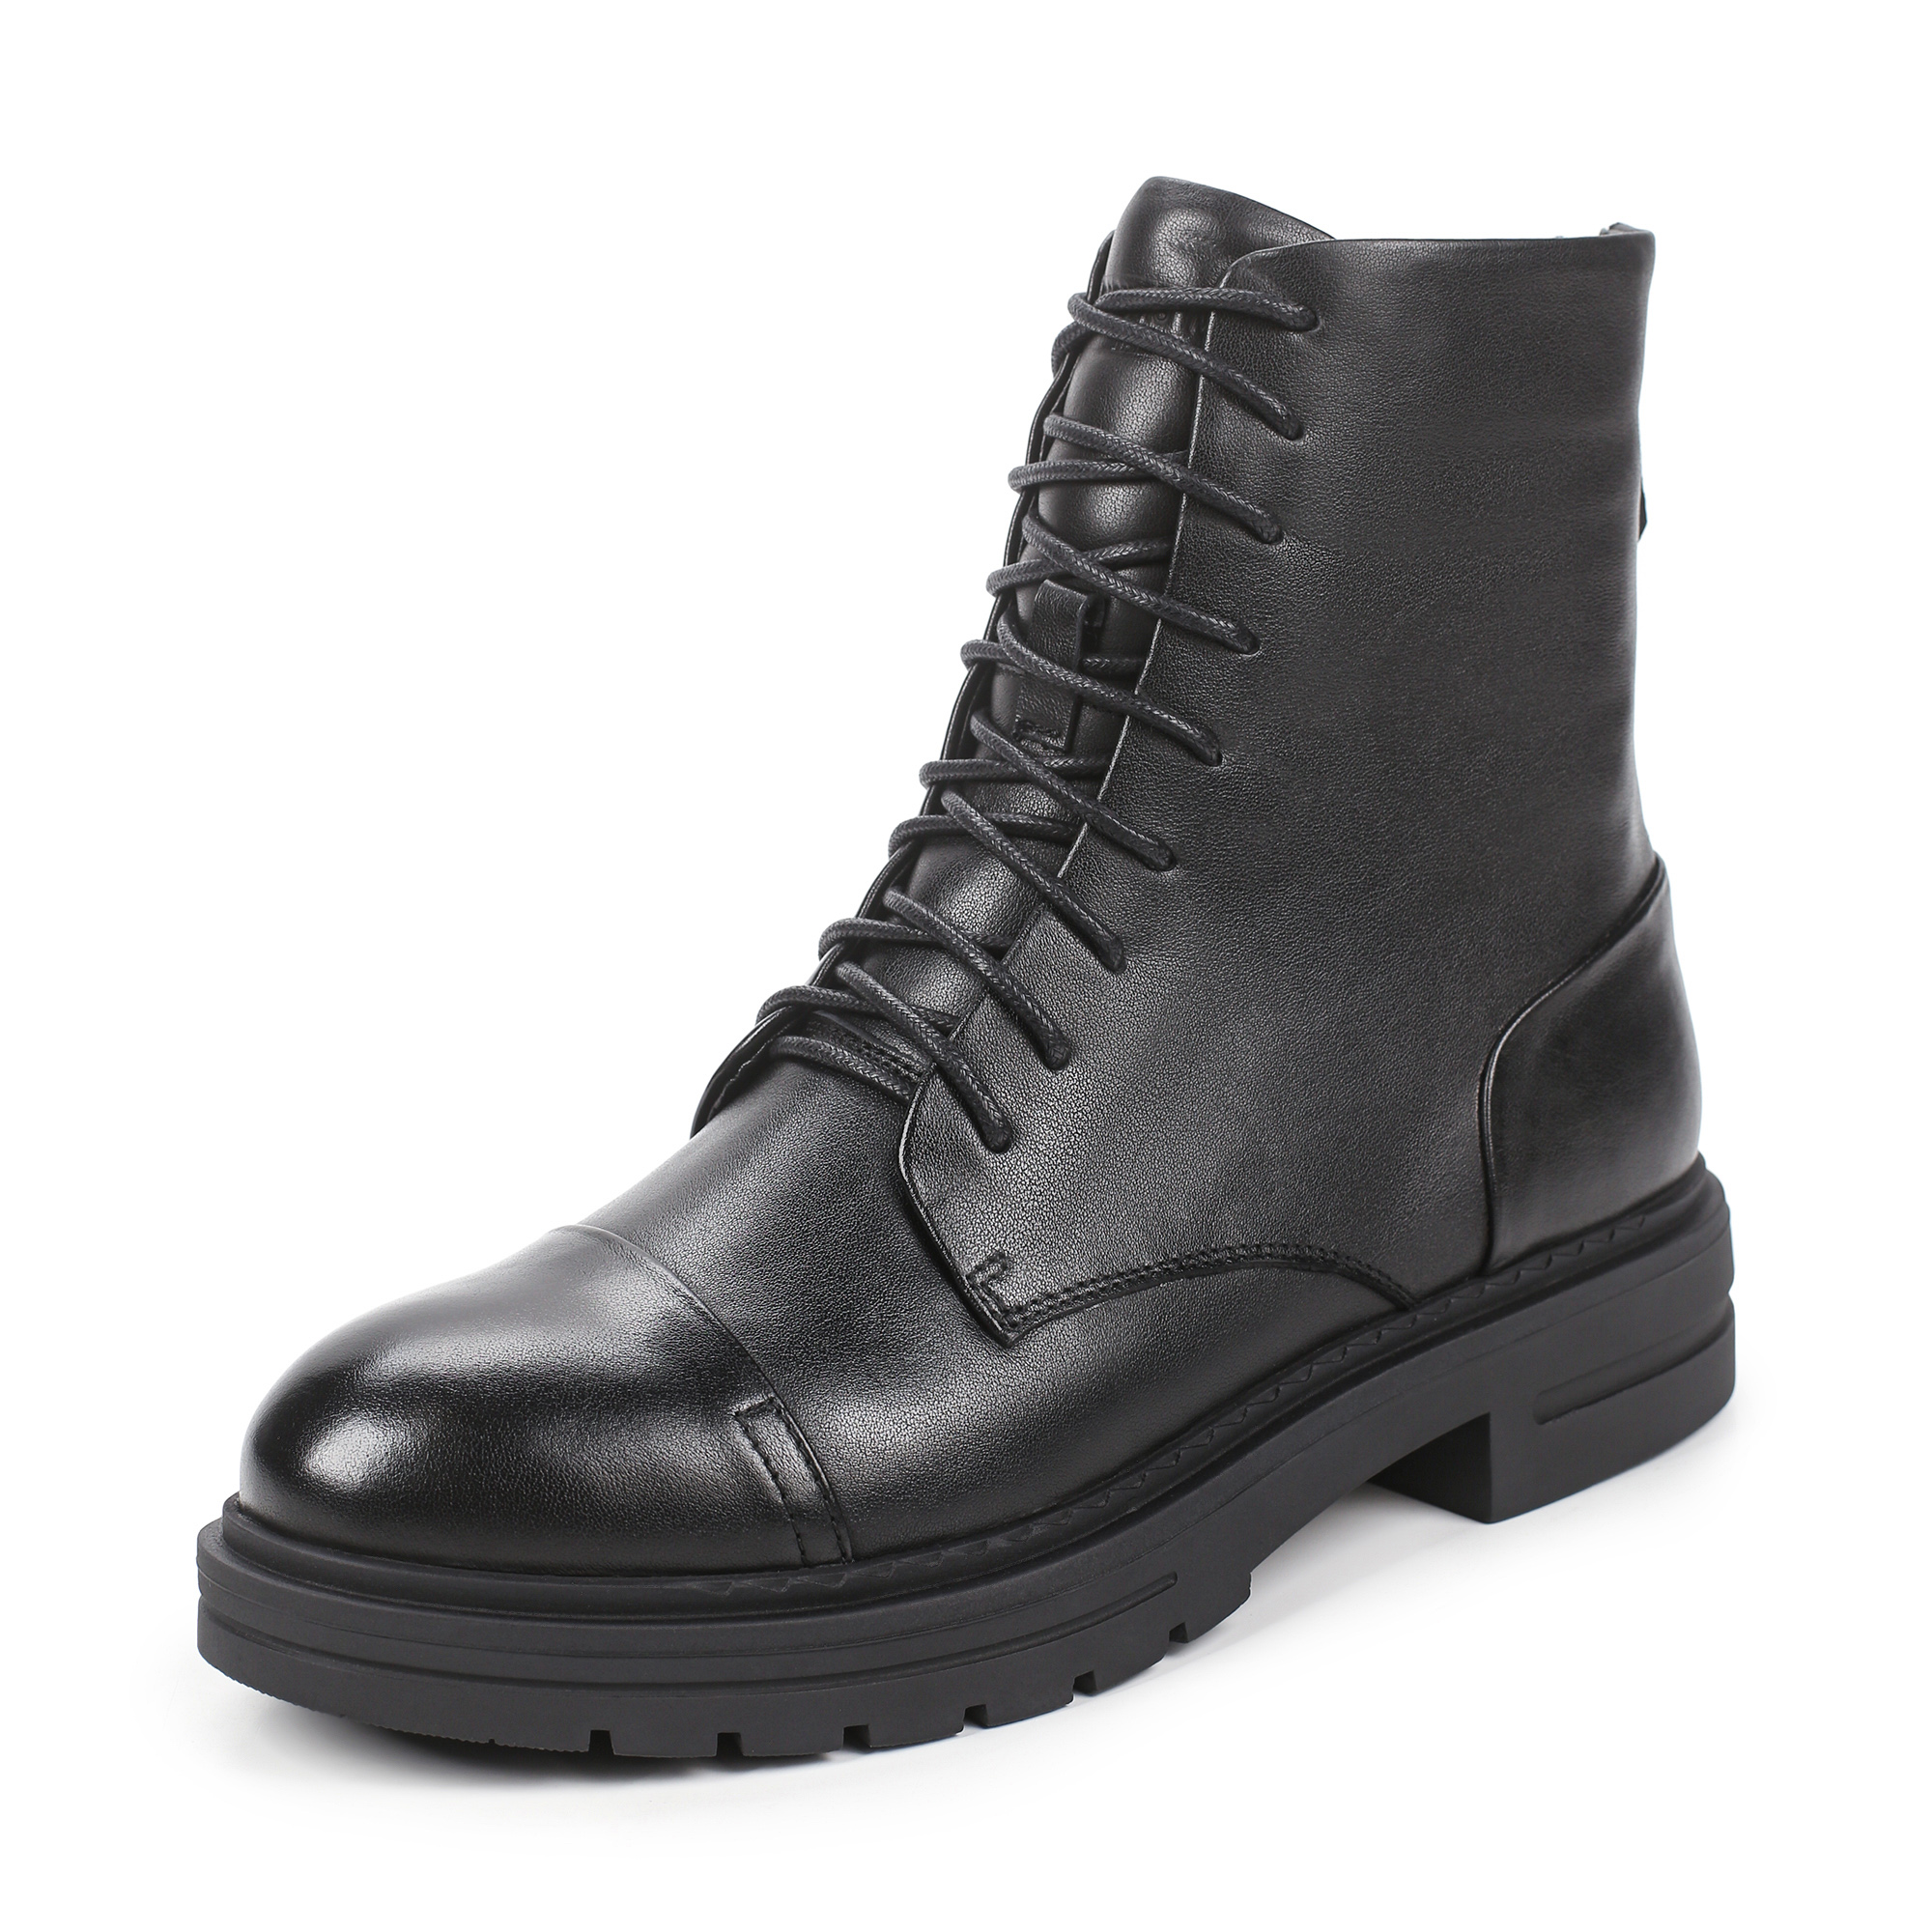 Ботинки Thomas Munz 233-695A-2102, цвет черный, размер 39 - фото 2